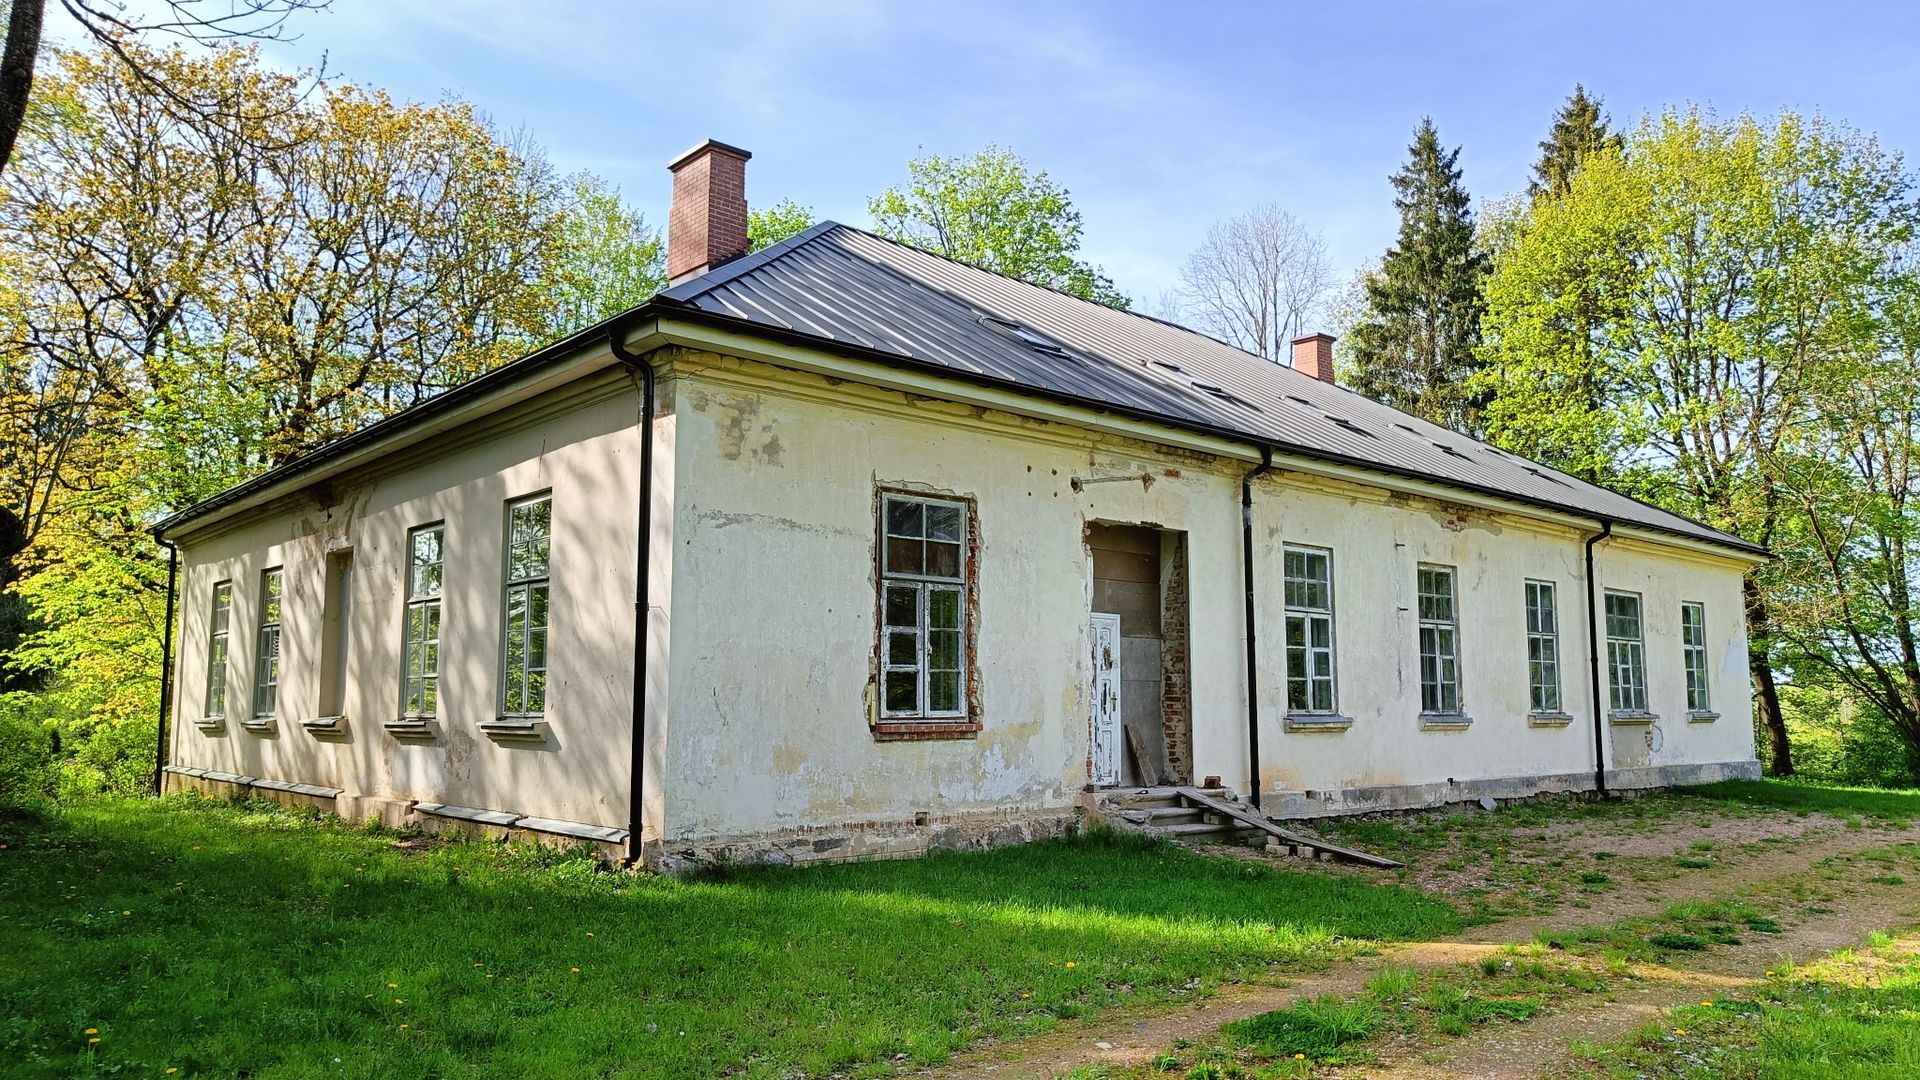 Former Liukonys Manor